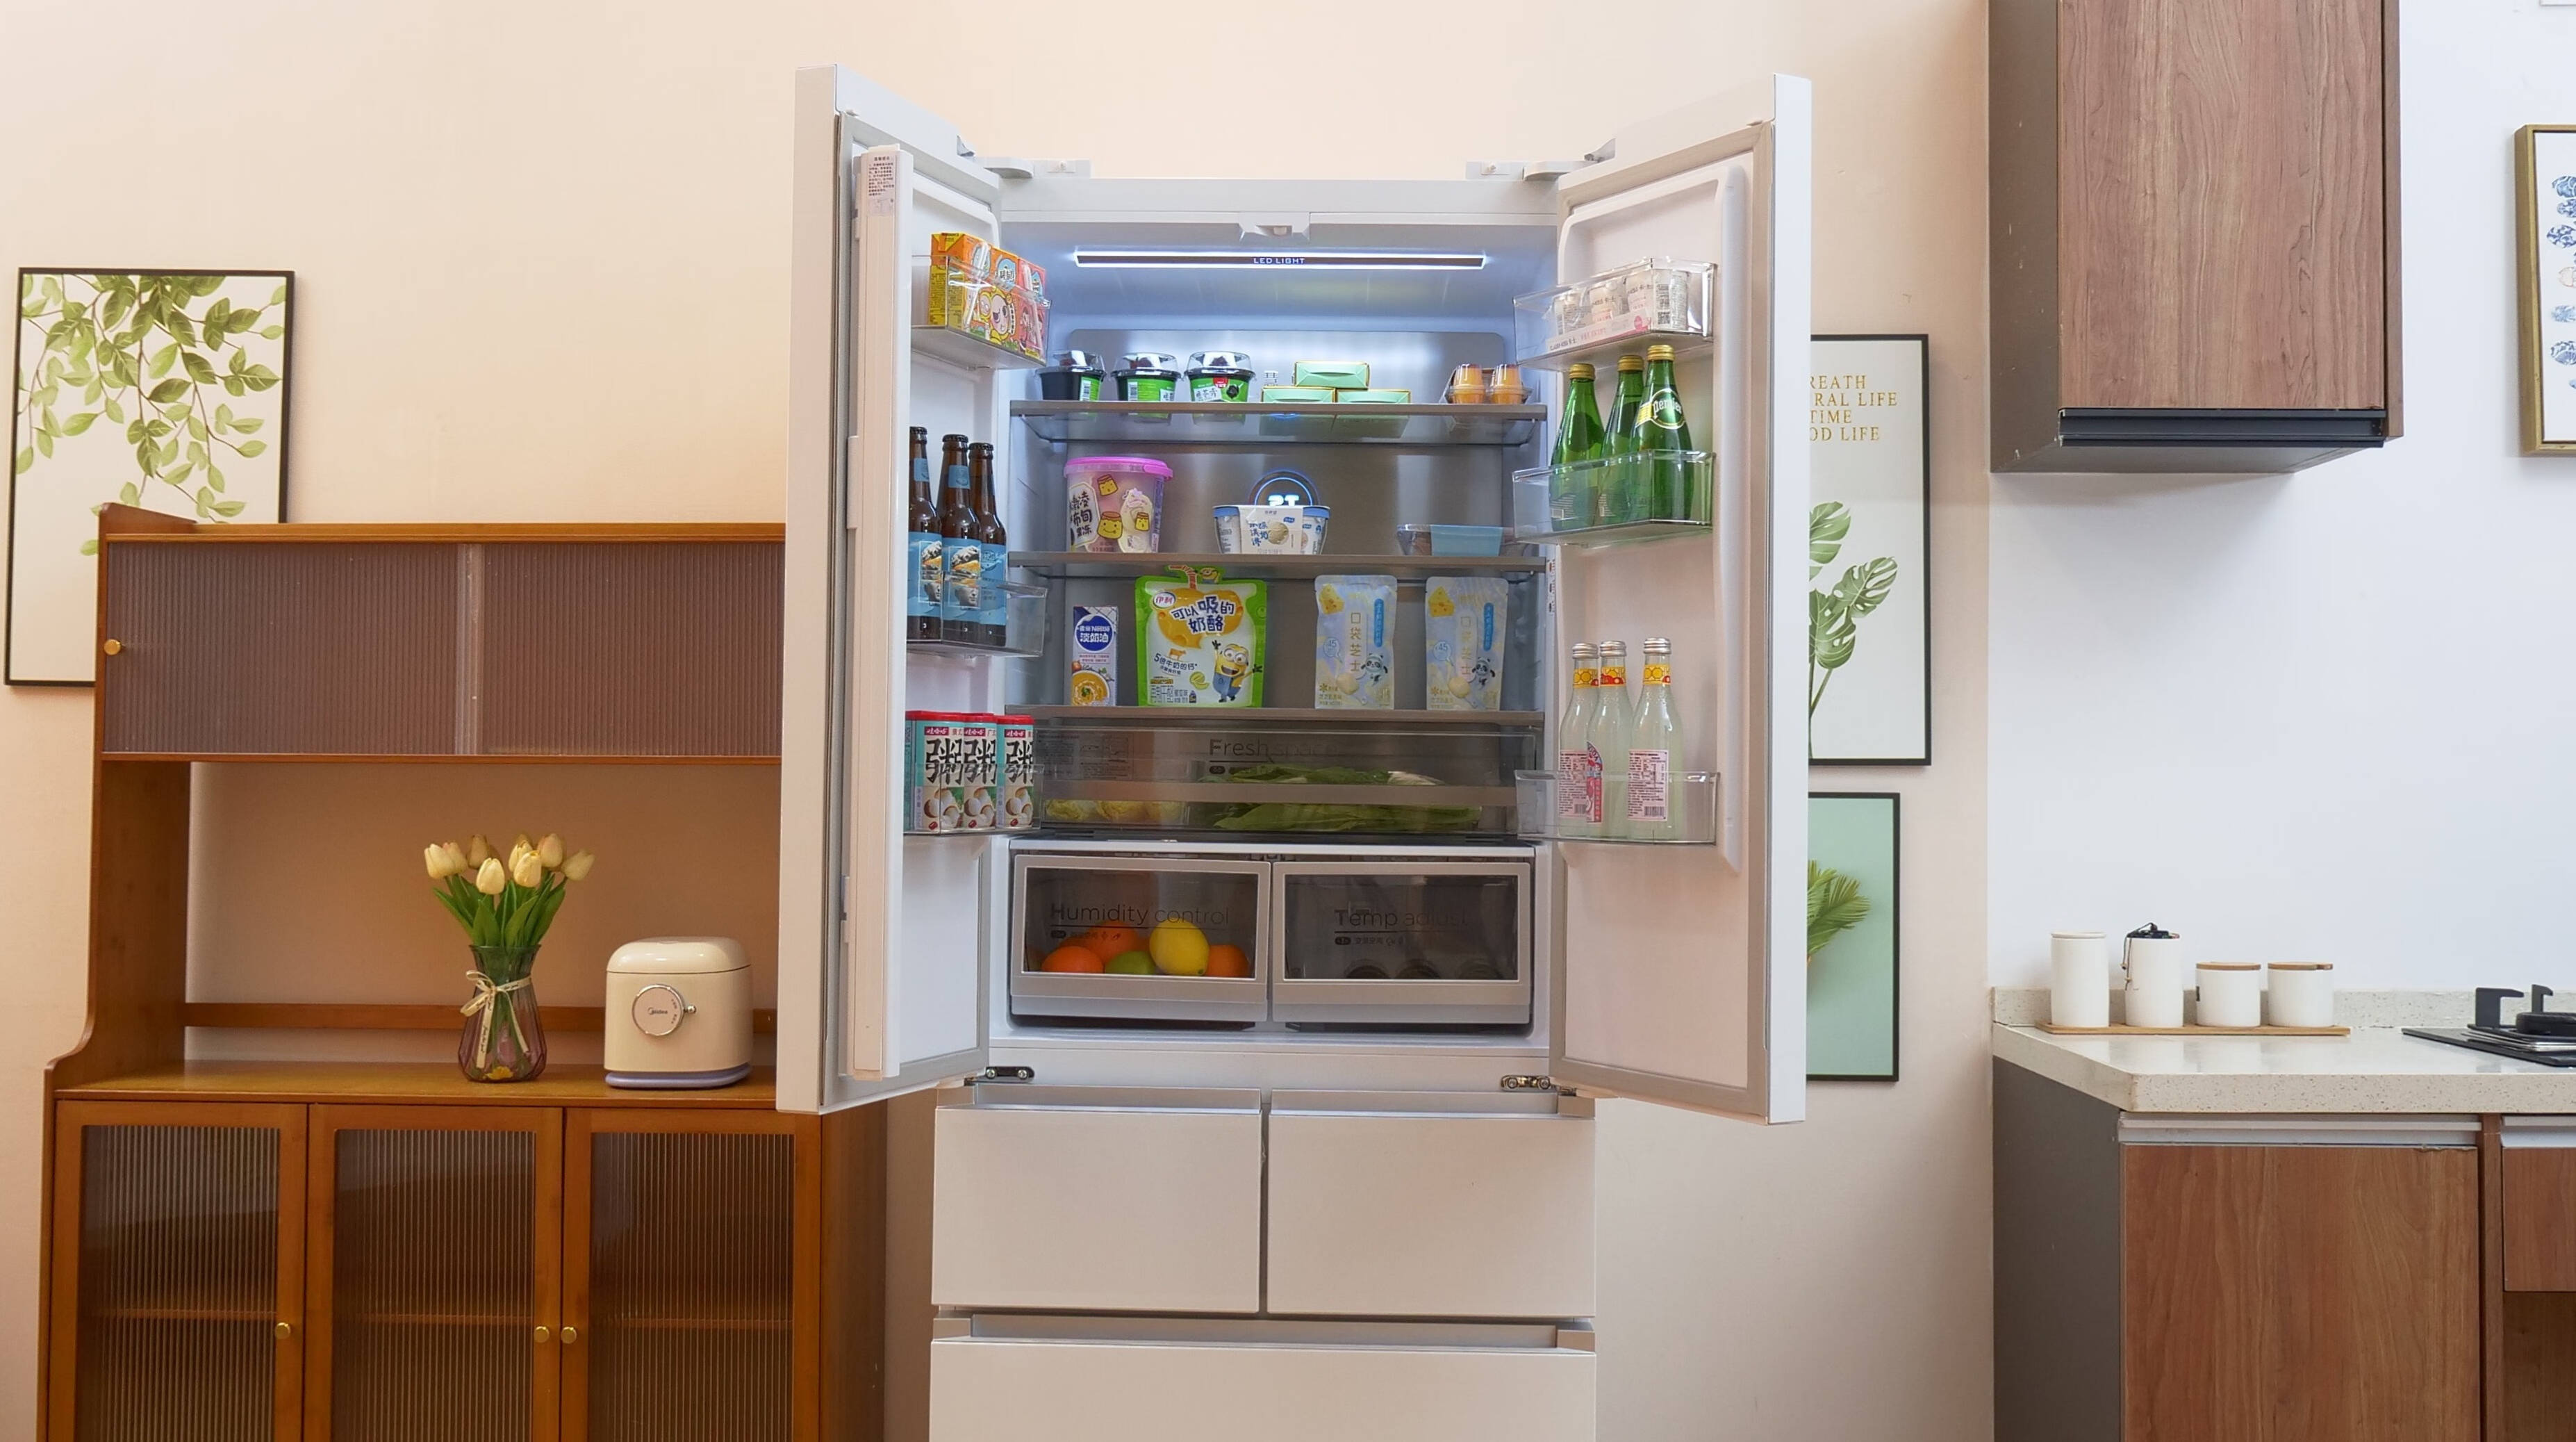 大冰箱囤不只是货，更是满满的安全感